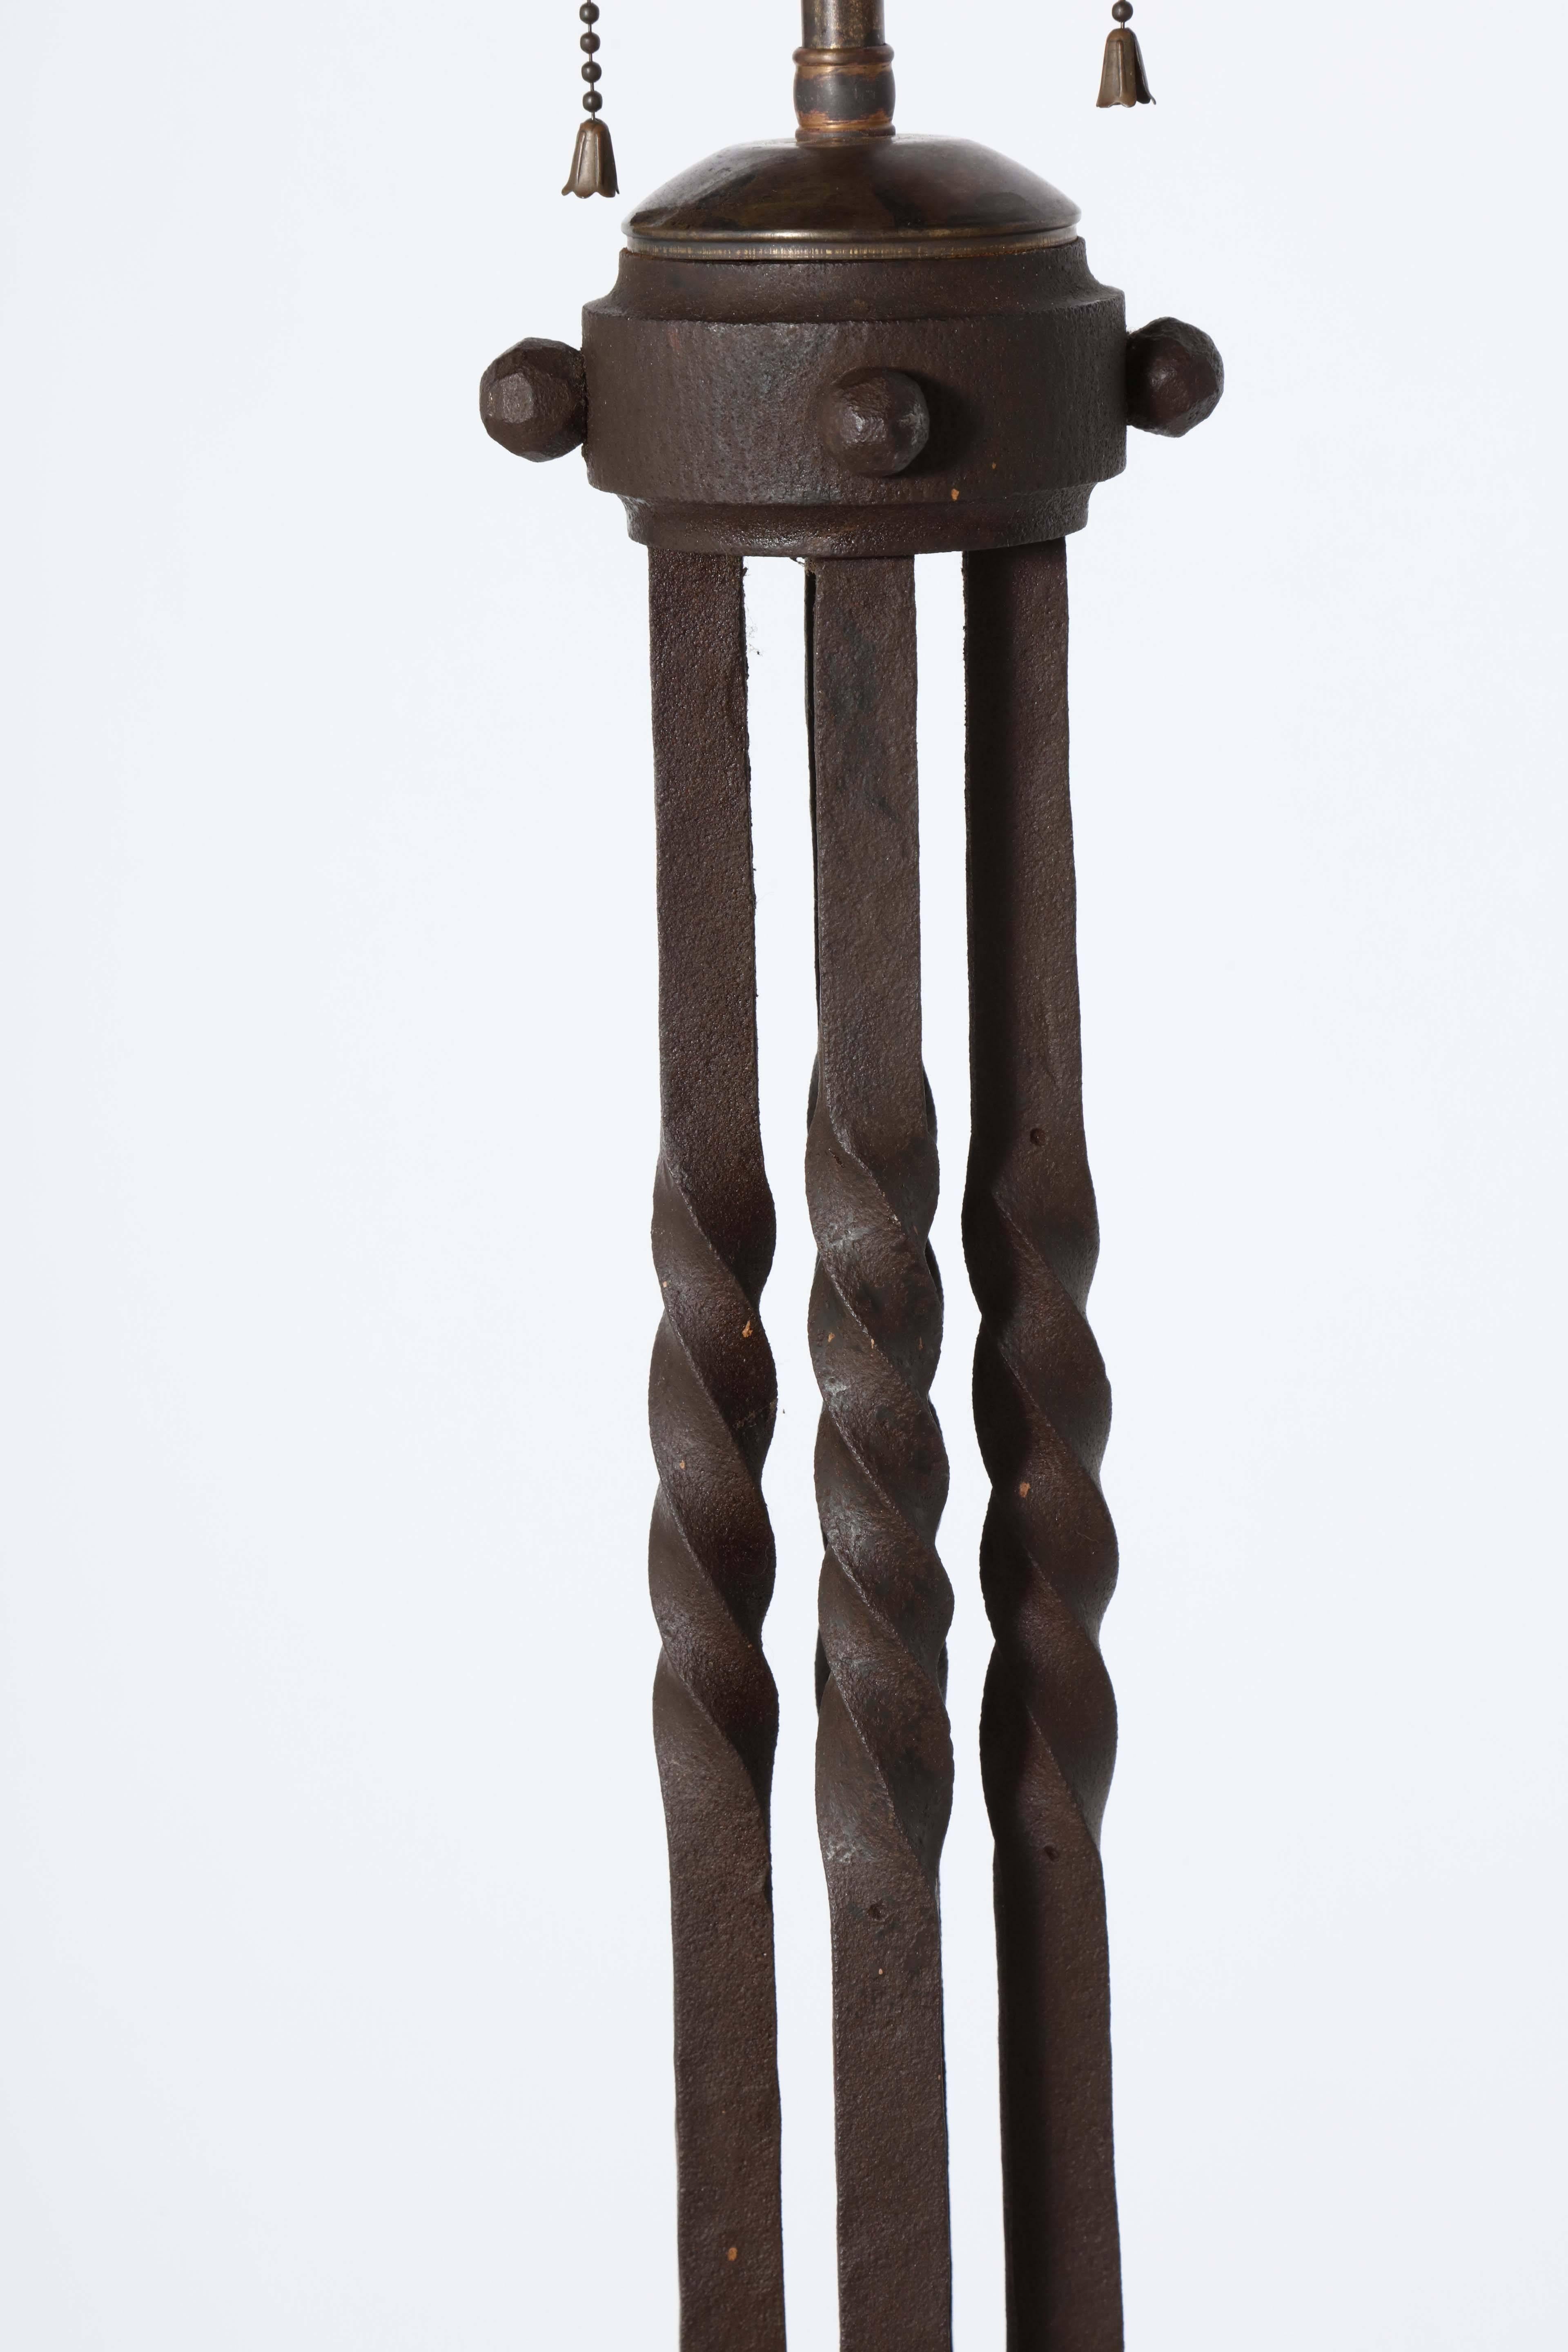 Arts and Crafts-Stehlampe „Twist“ aus dunklem Eisen, um 1910  (20. Jahrhundert)